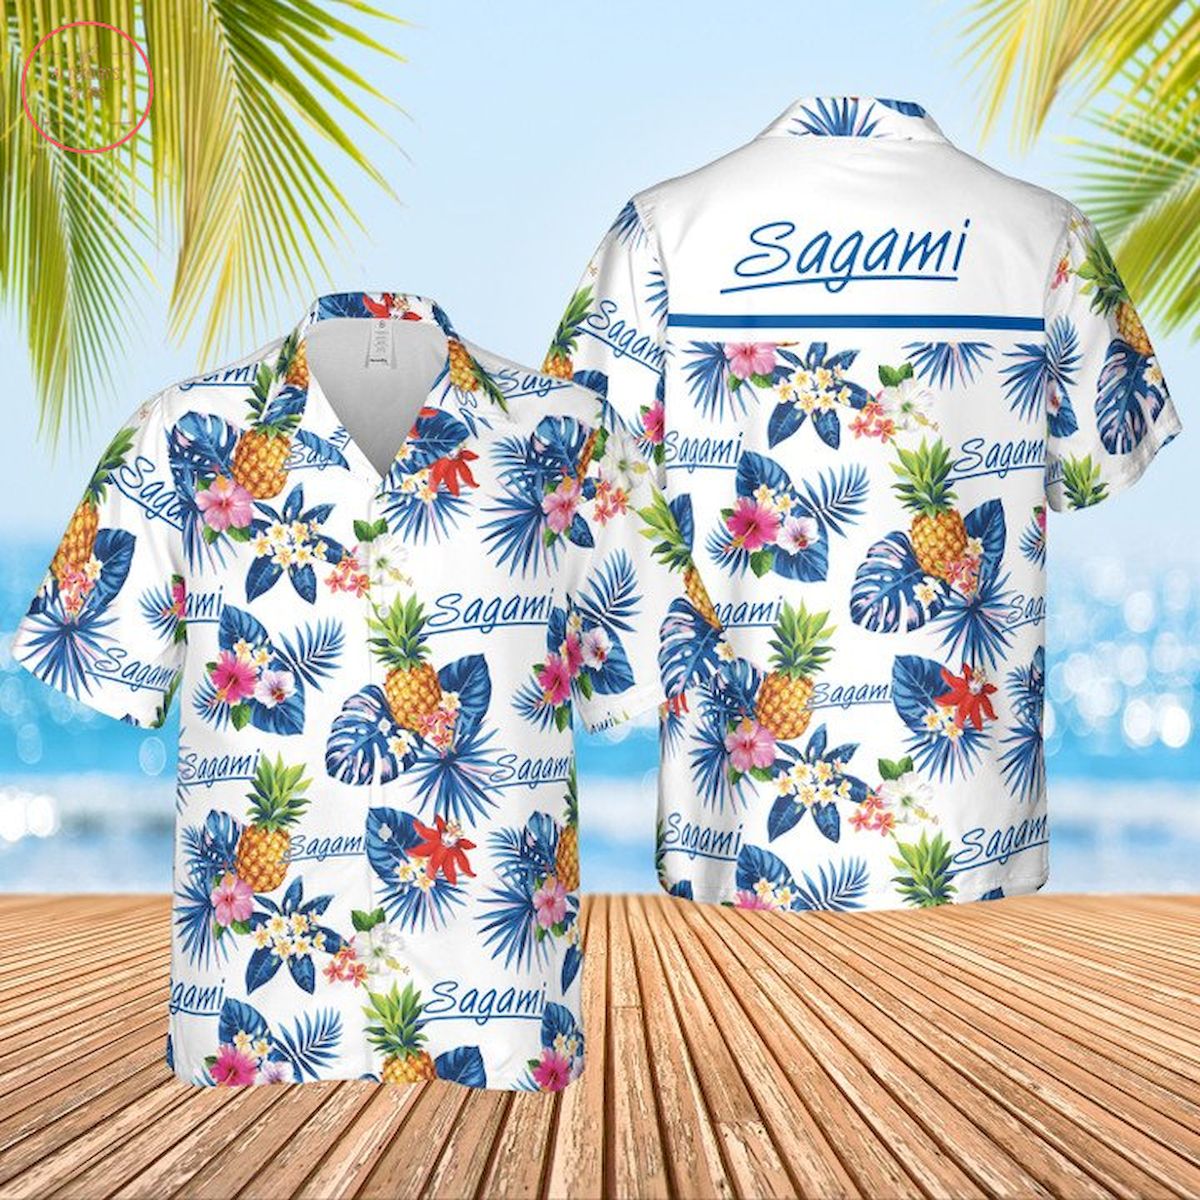 Sagami Condoms Hawaiian Shirt and Shorts